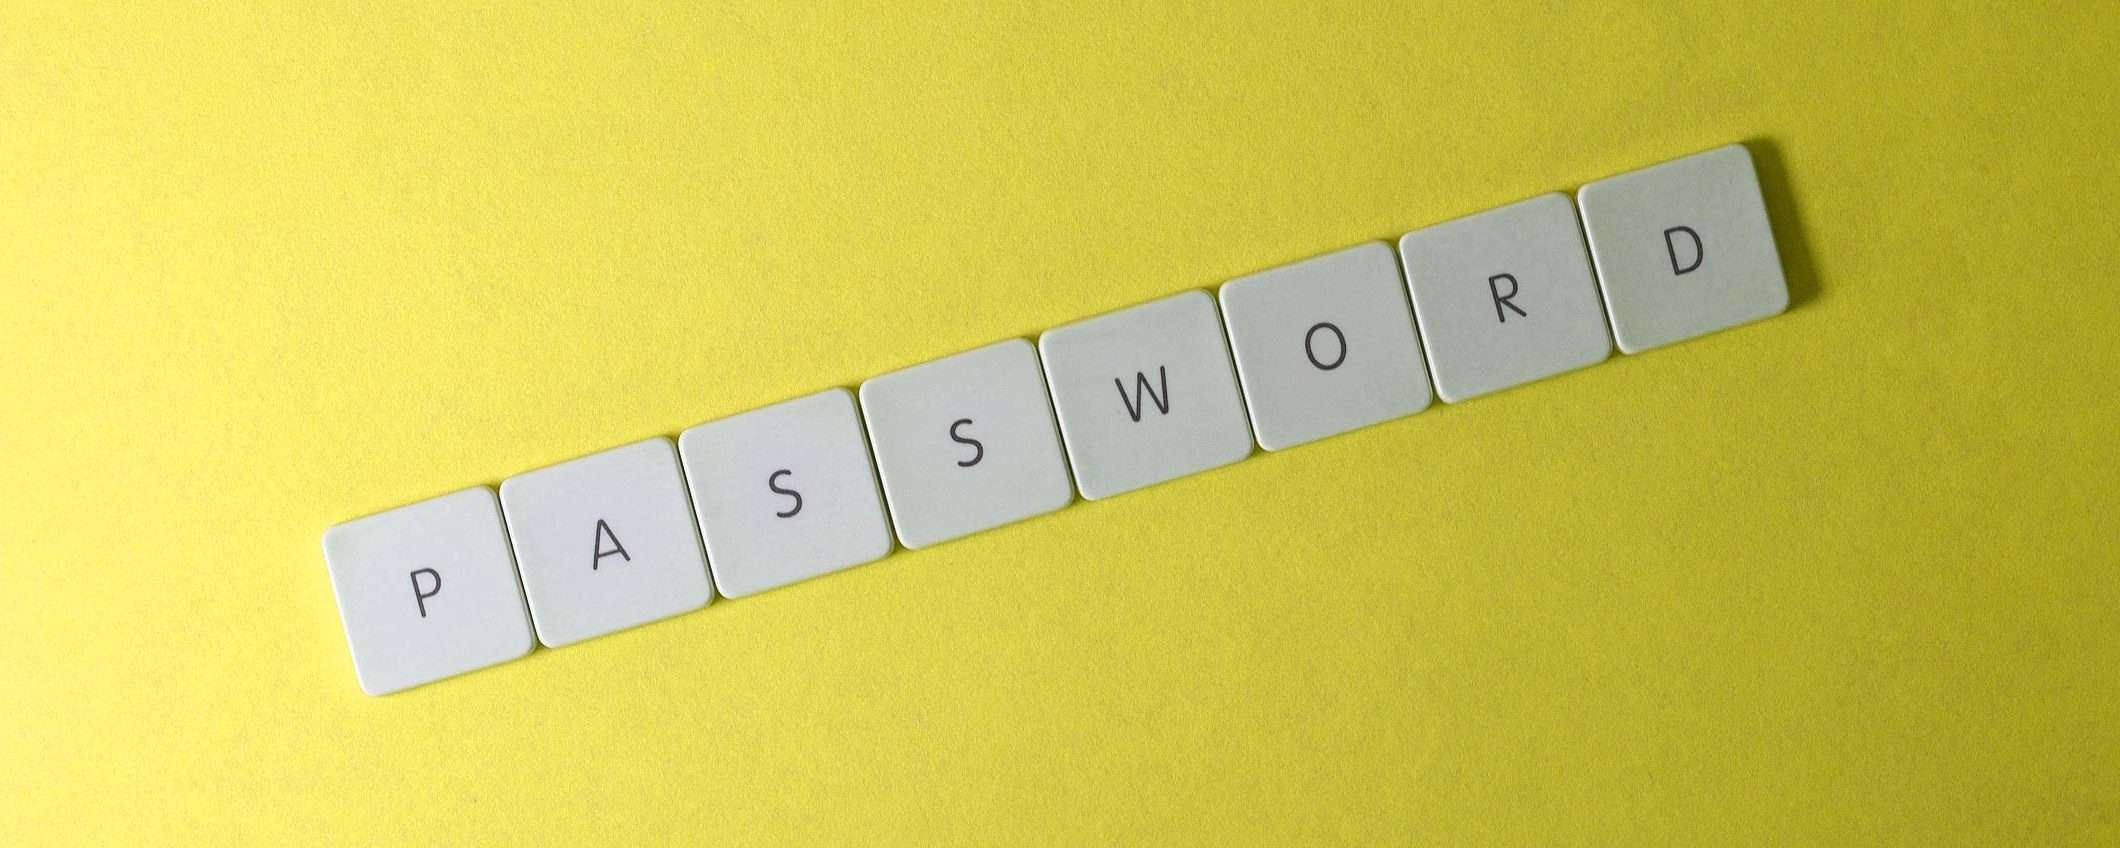 Password: scoperto un database di 25 milioni di credenziali